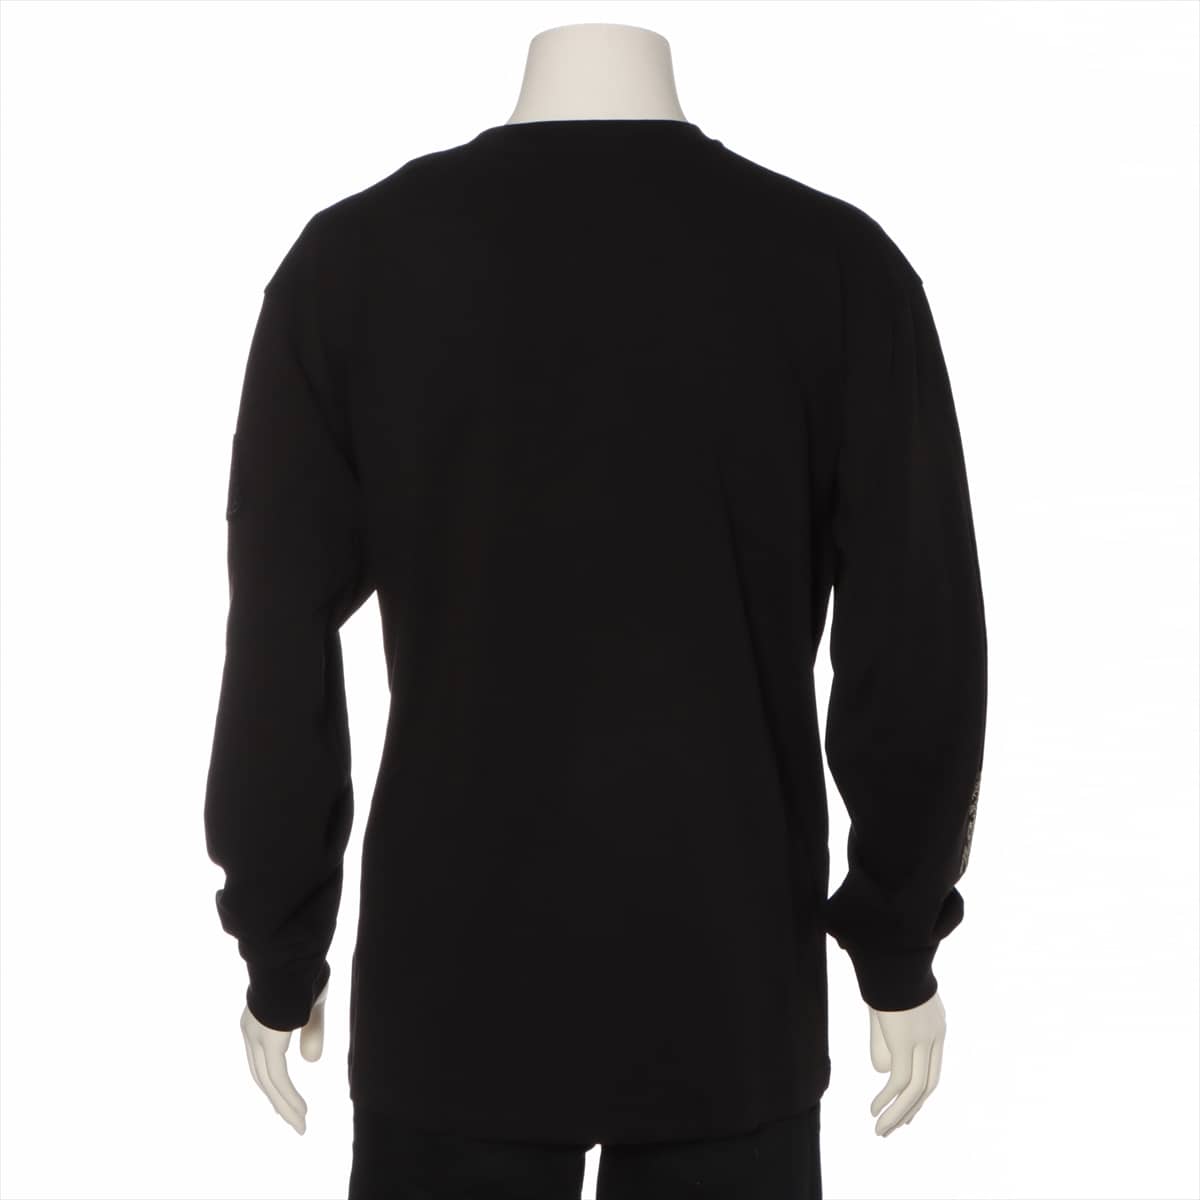 Moncler Genius 1952 MAGLIA 20 years Cotton Long T shirts M Men's Black